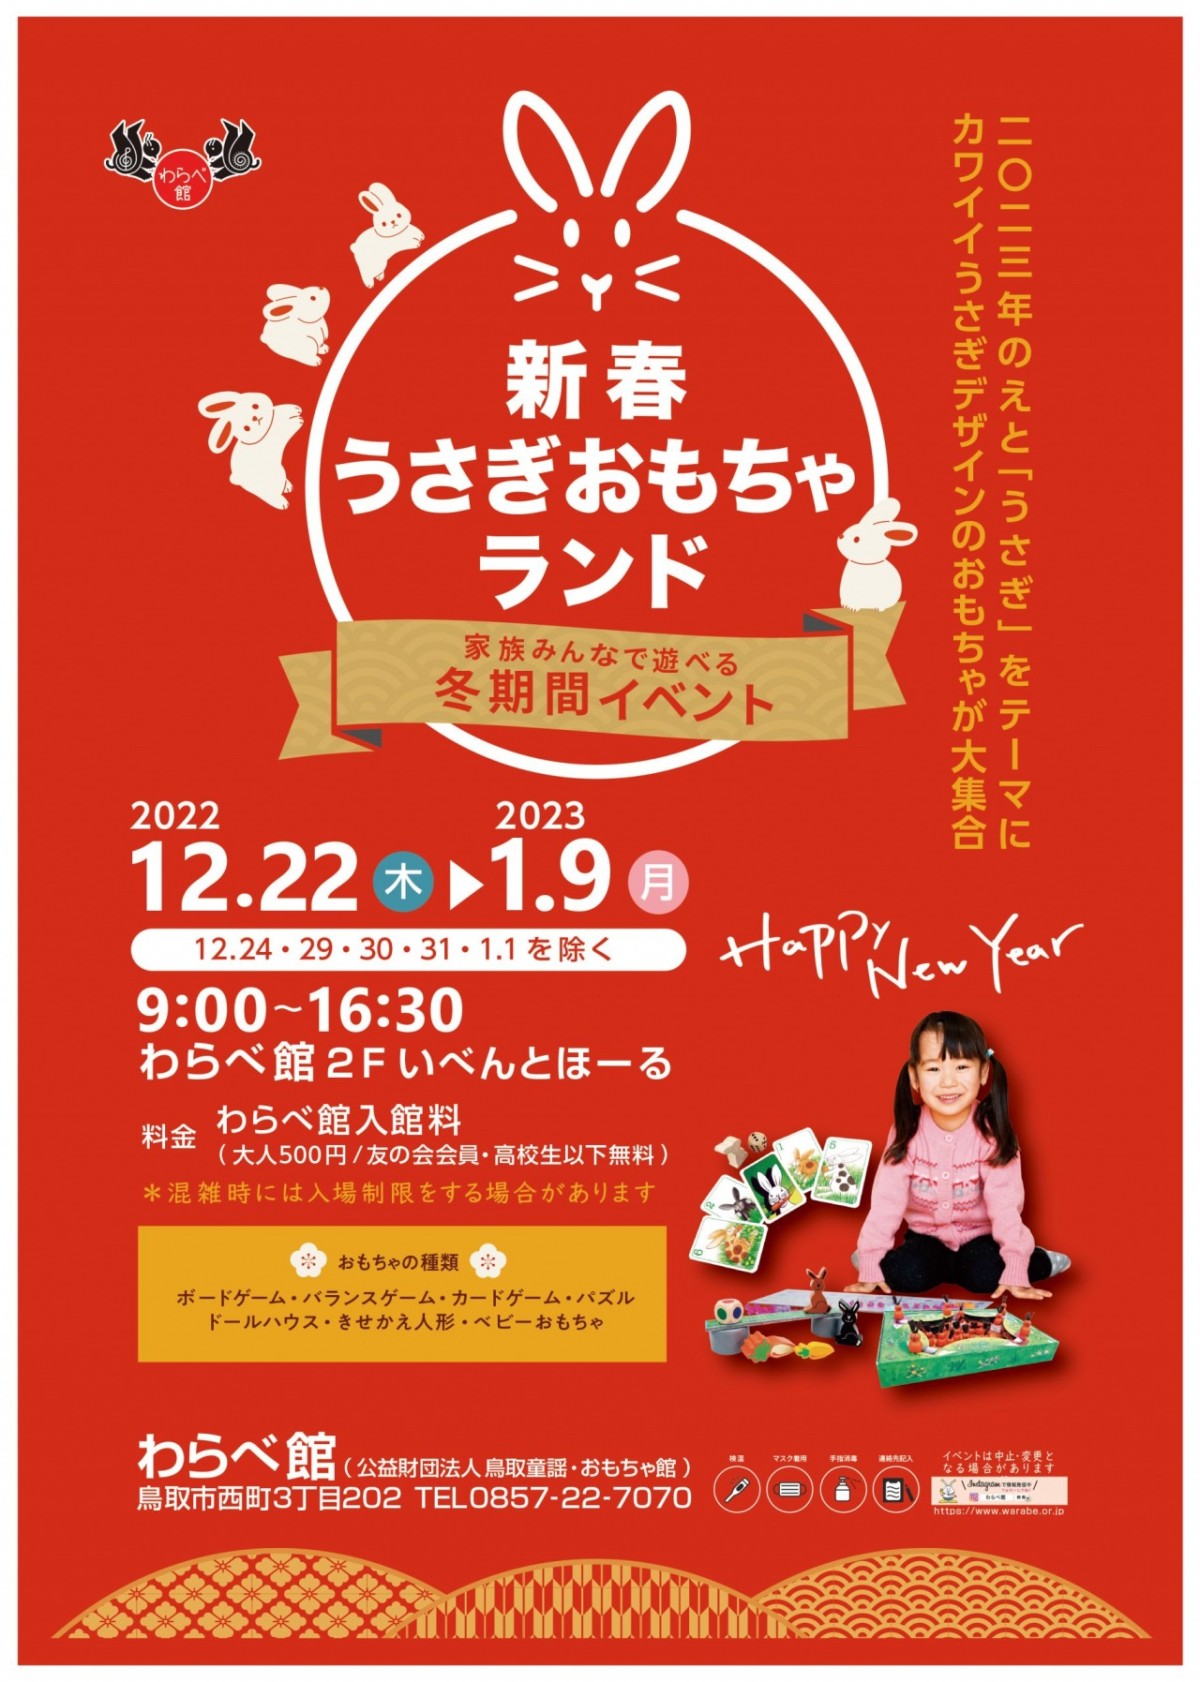 鳥取県鳥取市『わらべ館』のイベント「新春うさぎおもちゃランド」のポスター